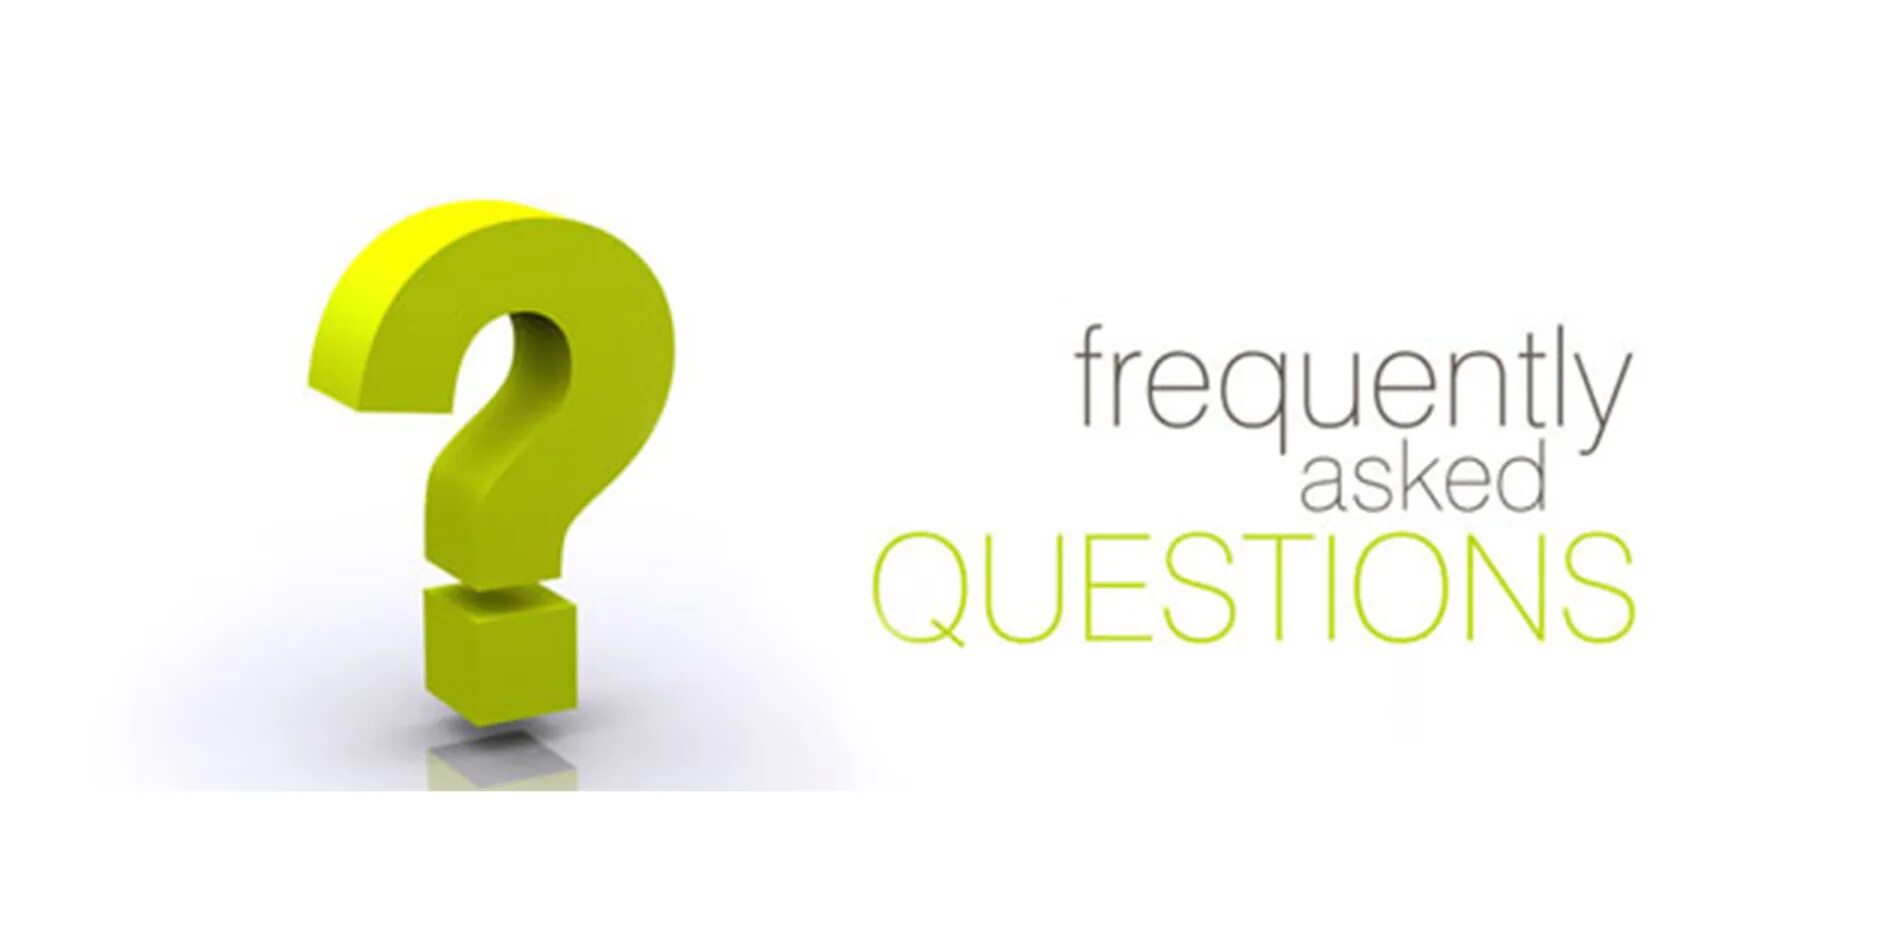 Сайт про вопросы. Ответы на часто задаваемые вопросы. Частые вопросы. Вопрос-ответ. Рубрика частые вопросы.